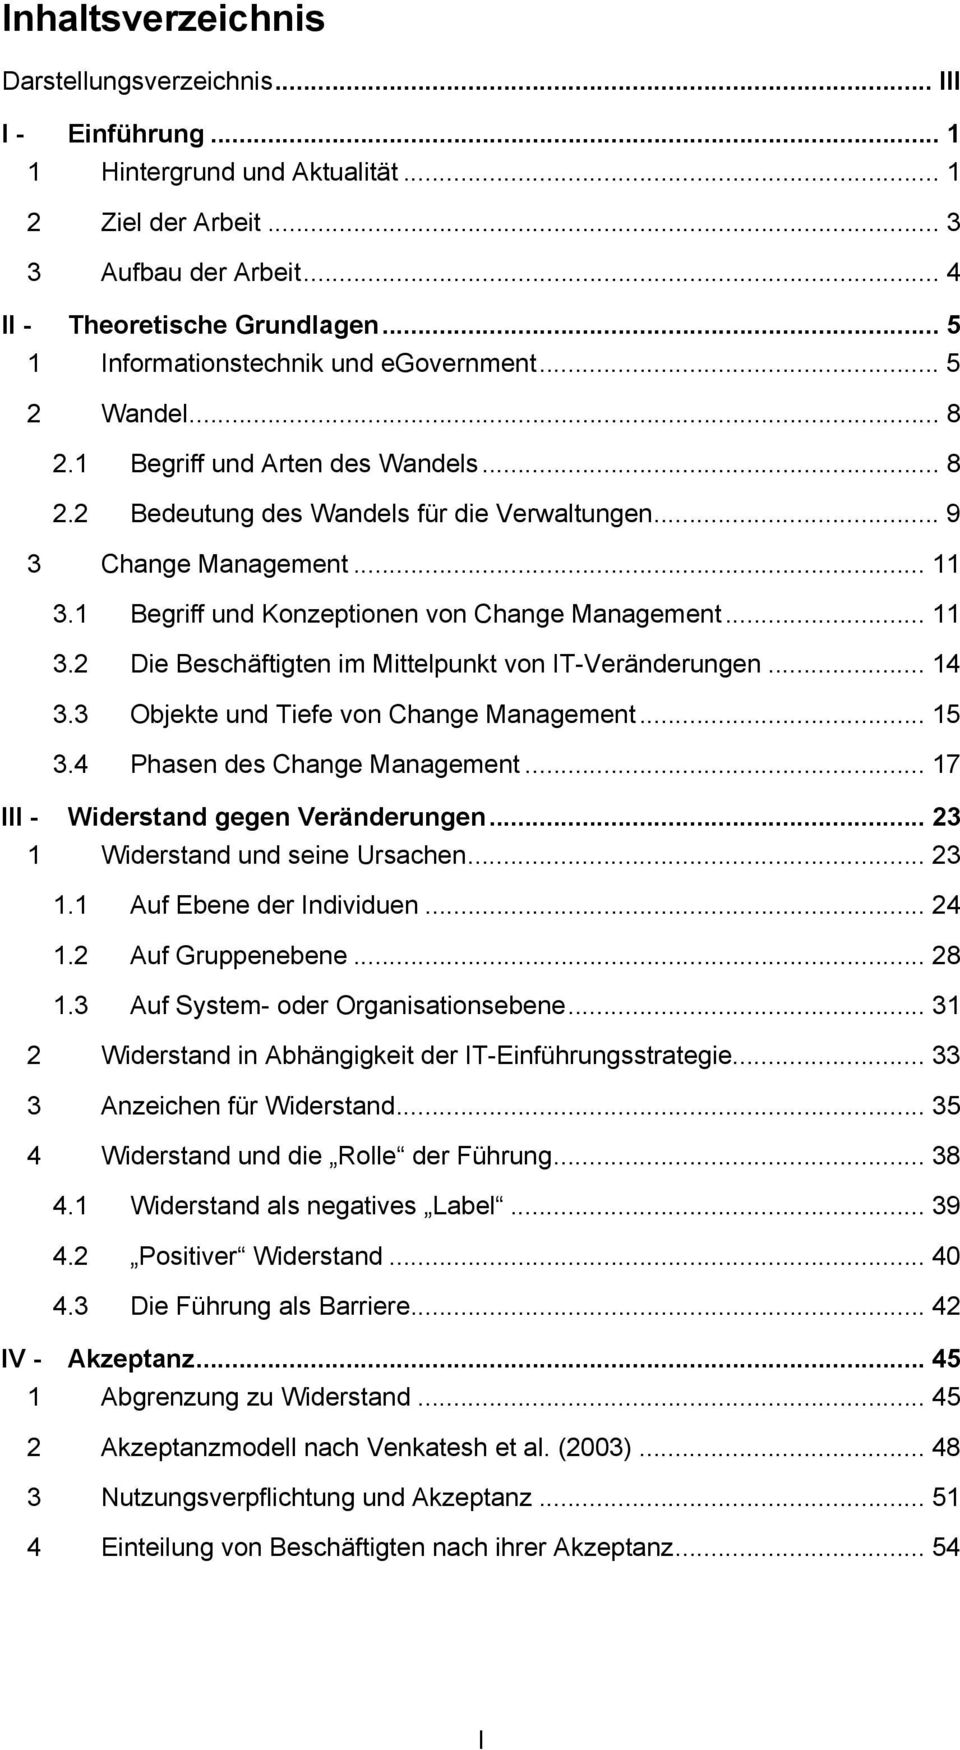 1 Begriff und Konzeptionen von Change Management... 11 3.2 Die Beschäftigten im Mittelpunkt von IT-Veränderungen... 14 3.3 Objekte und Tiefe von Change Management... 15 3.